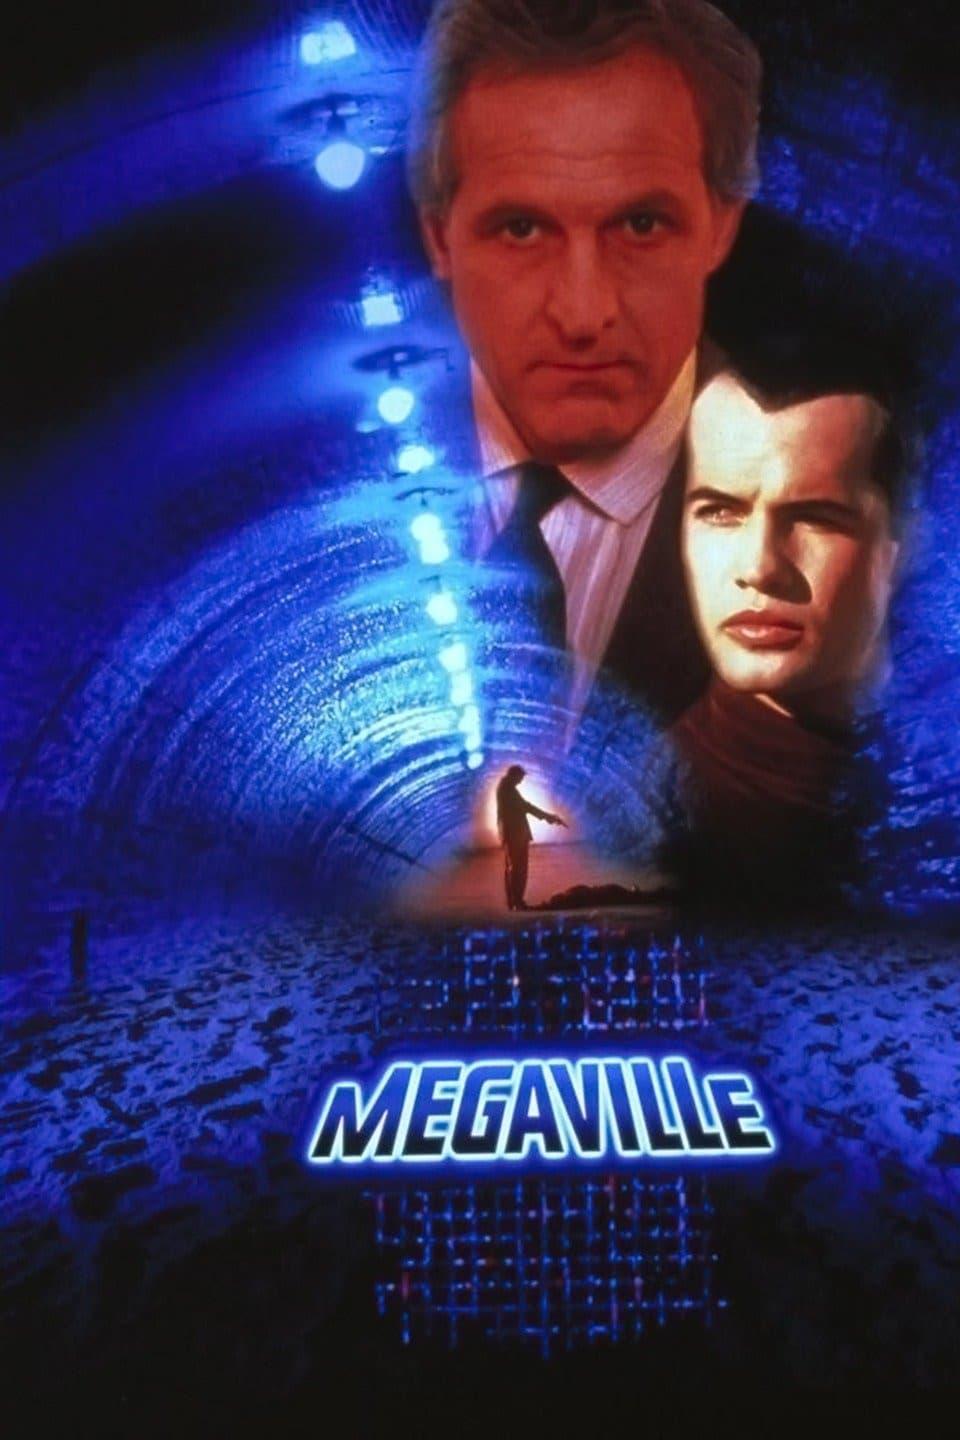 Megaville poster